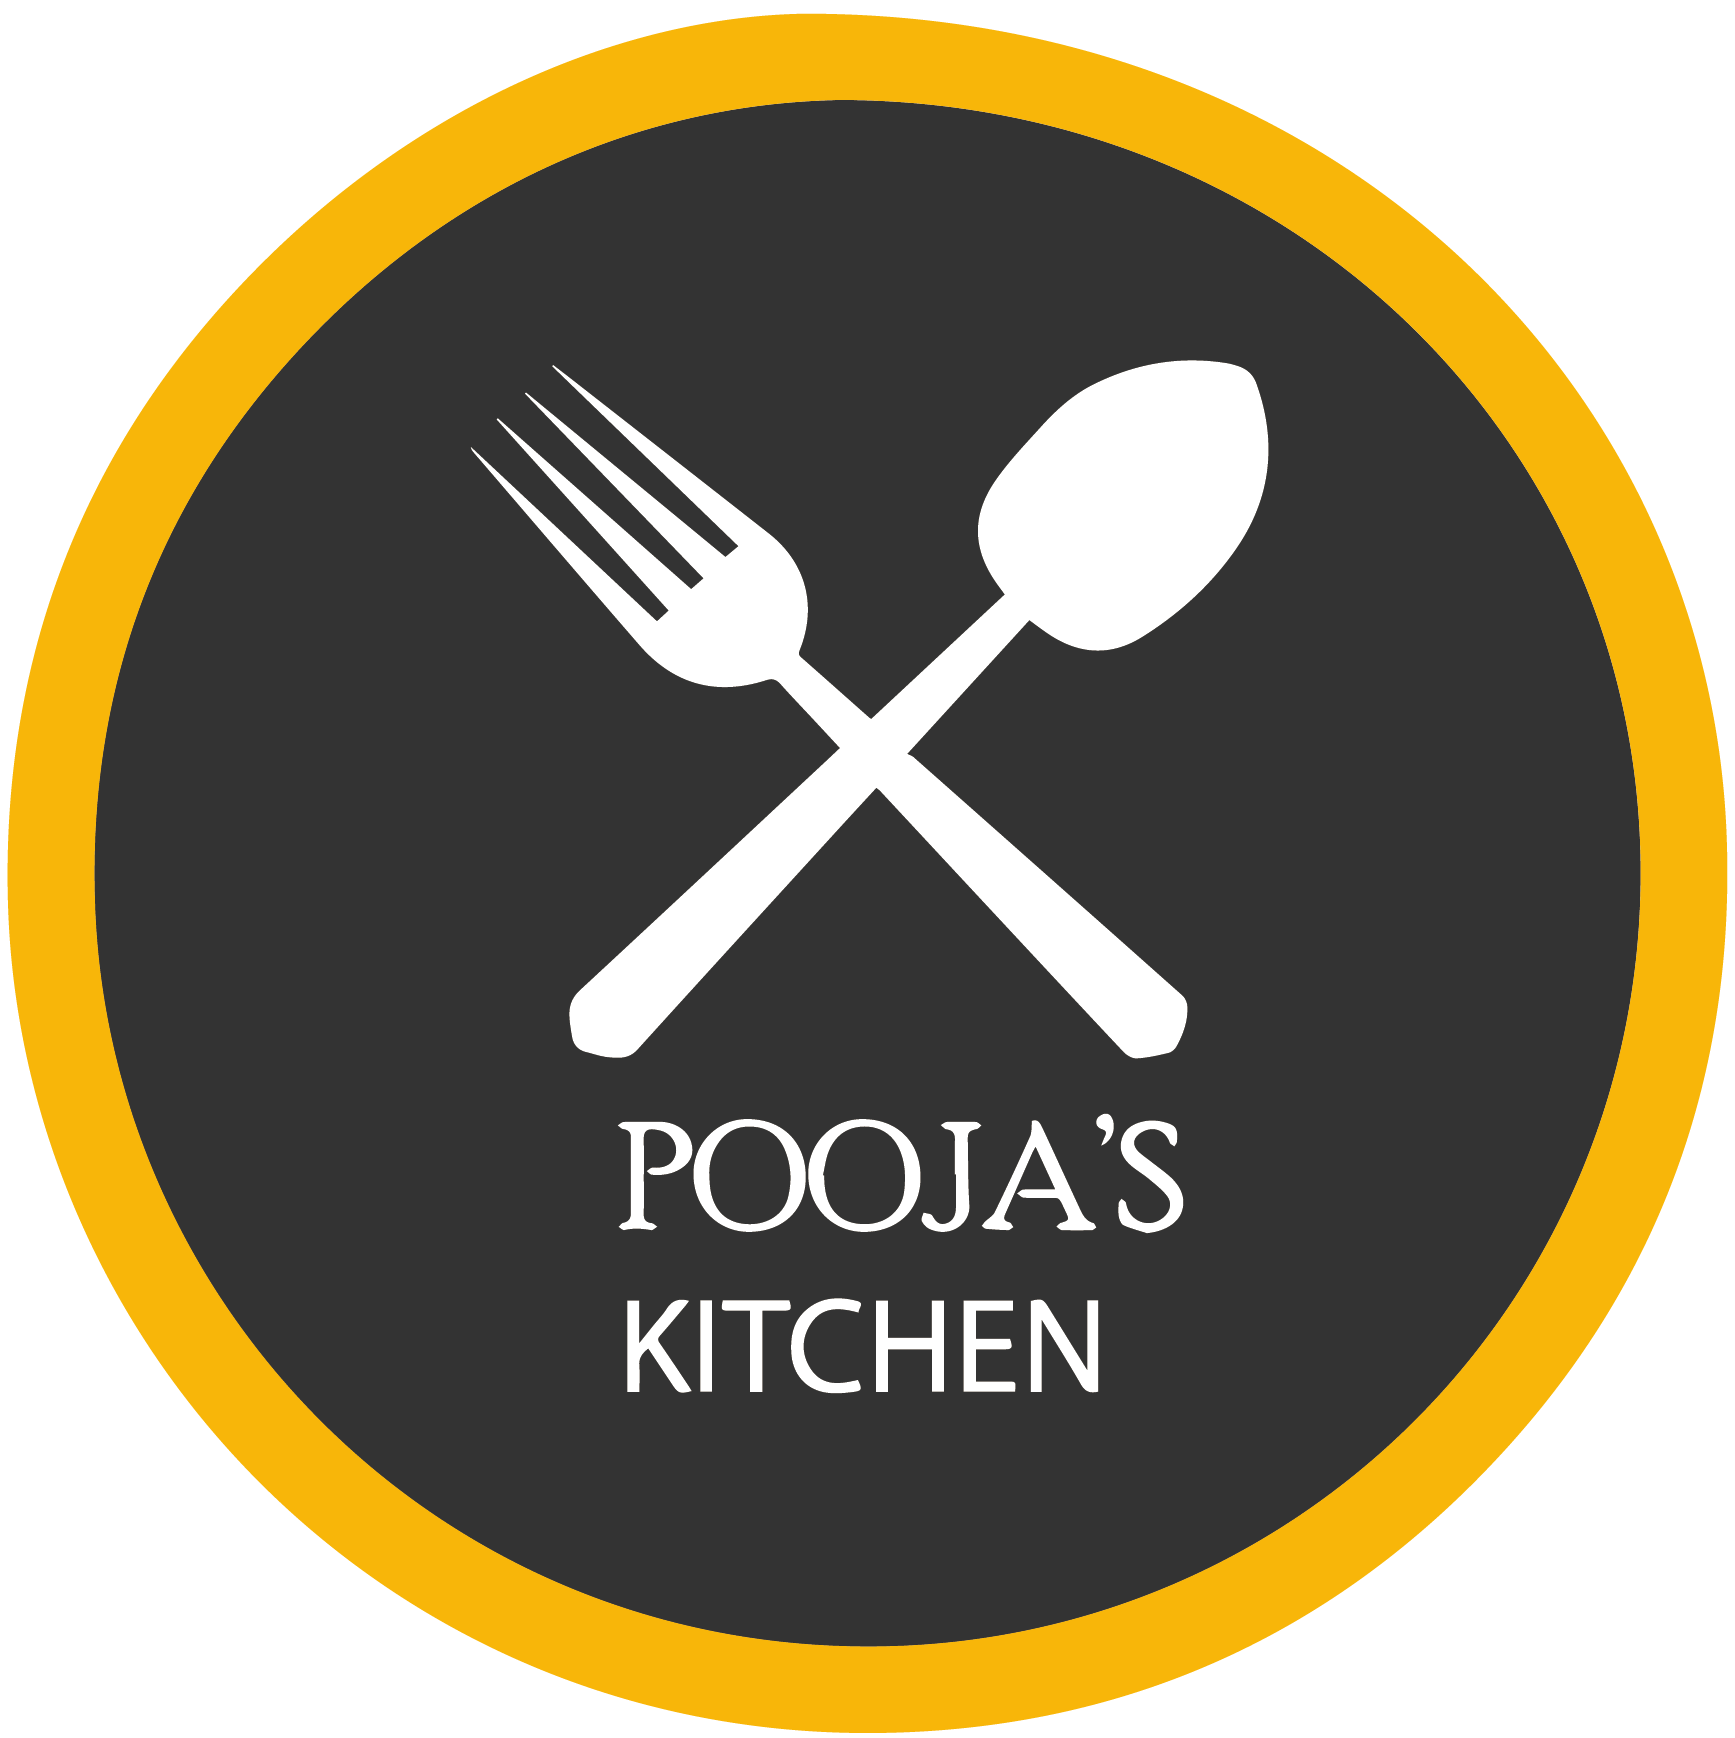 Pooja's Kitchen